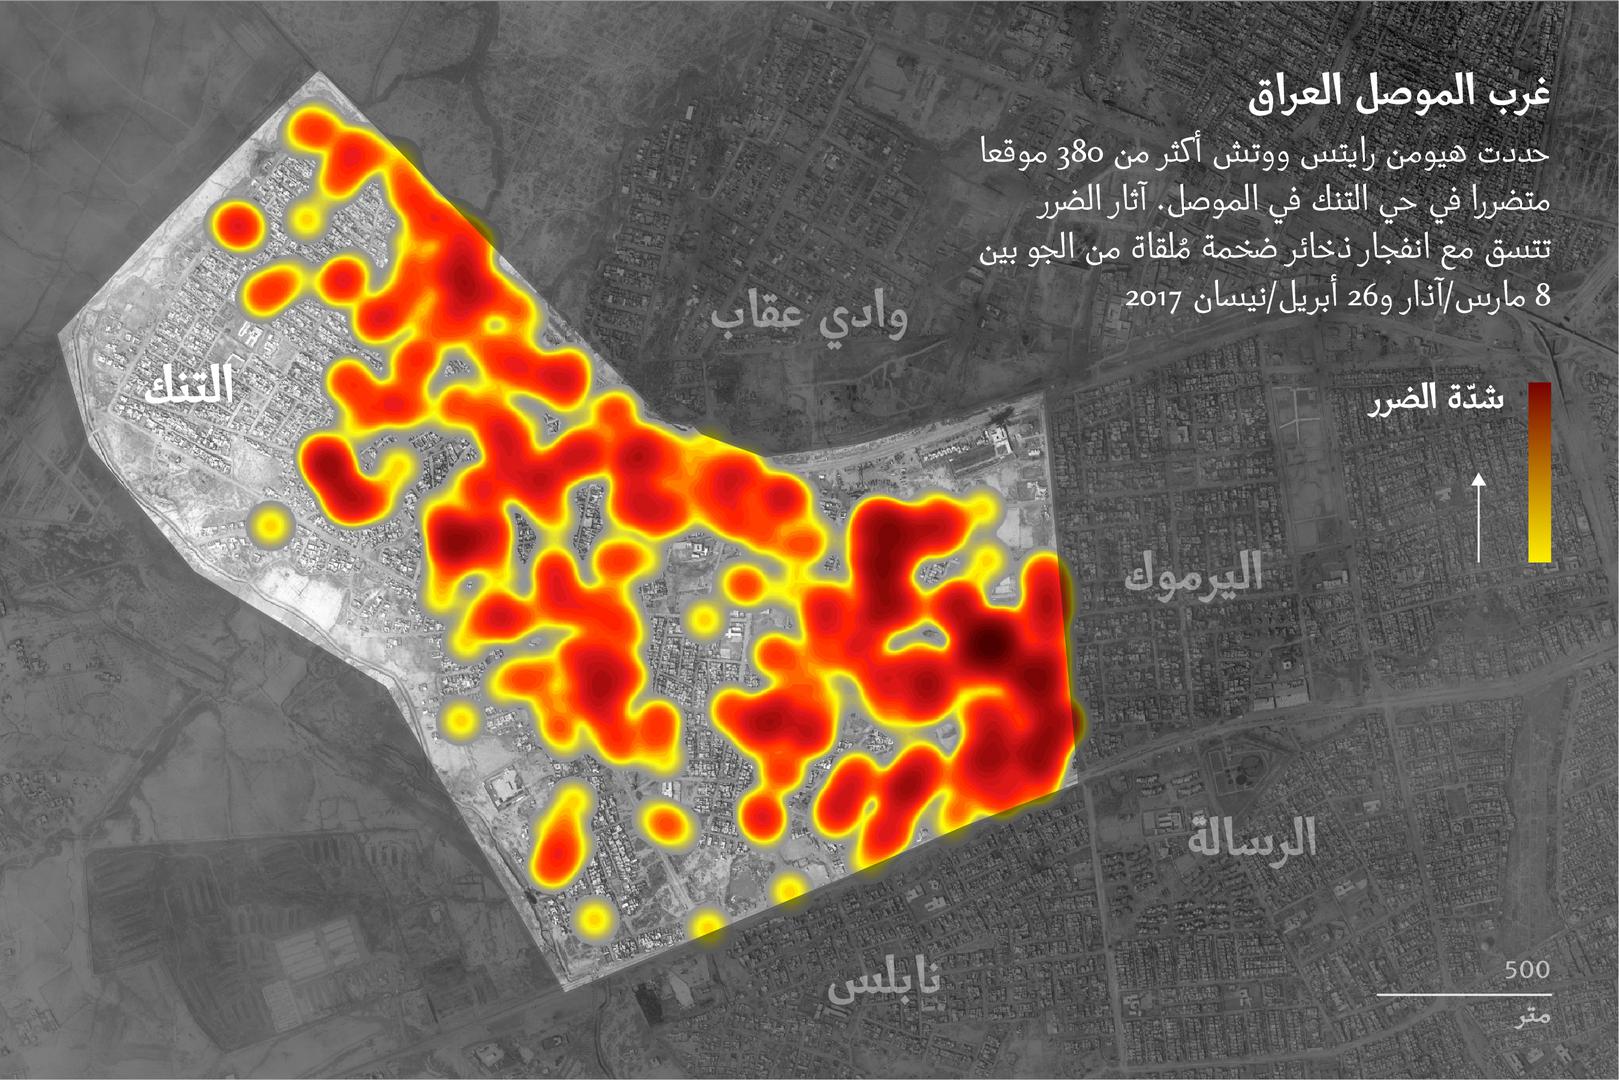 حددت هيومن رايتس ووتش أكثر من 380 موقعا متضررا في حي التنك في الموصل. آثار الضرر تتسق مع انفجار ذخائر ضخمة مُلقاة من الجو بين 8 مارس/آذار و26 أبريل/نيسان 2017